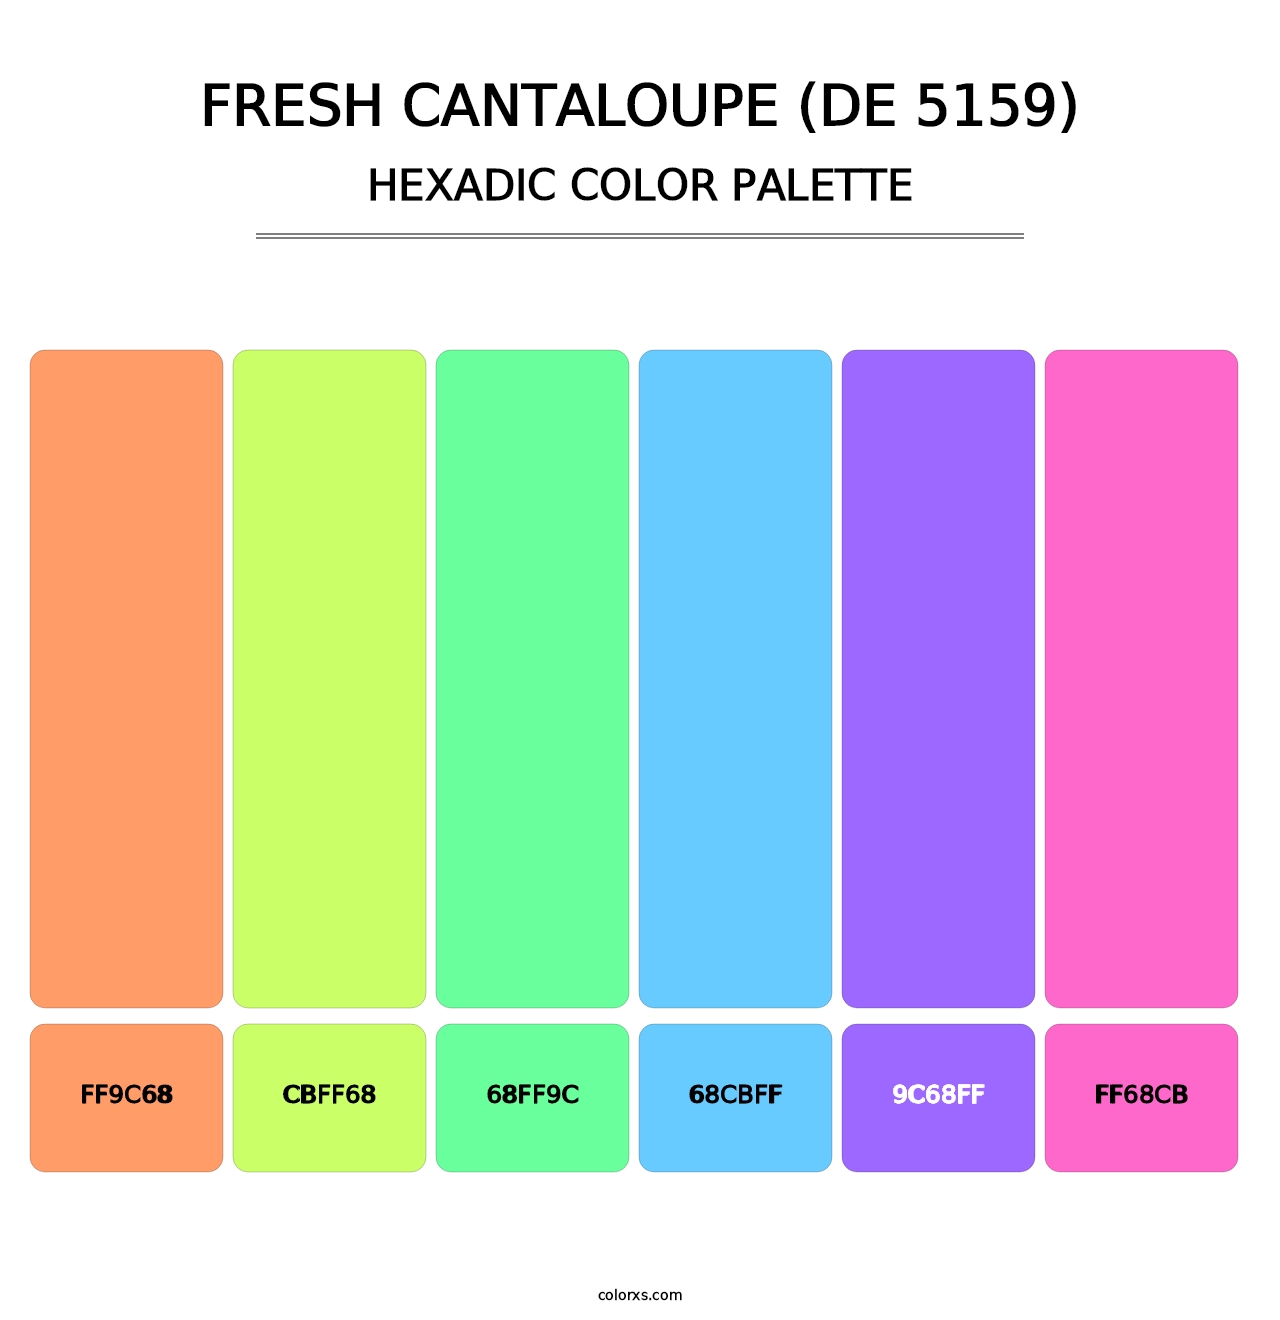 Fresh Cantaloupe (DE 5159) - Hexadic Color Palette